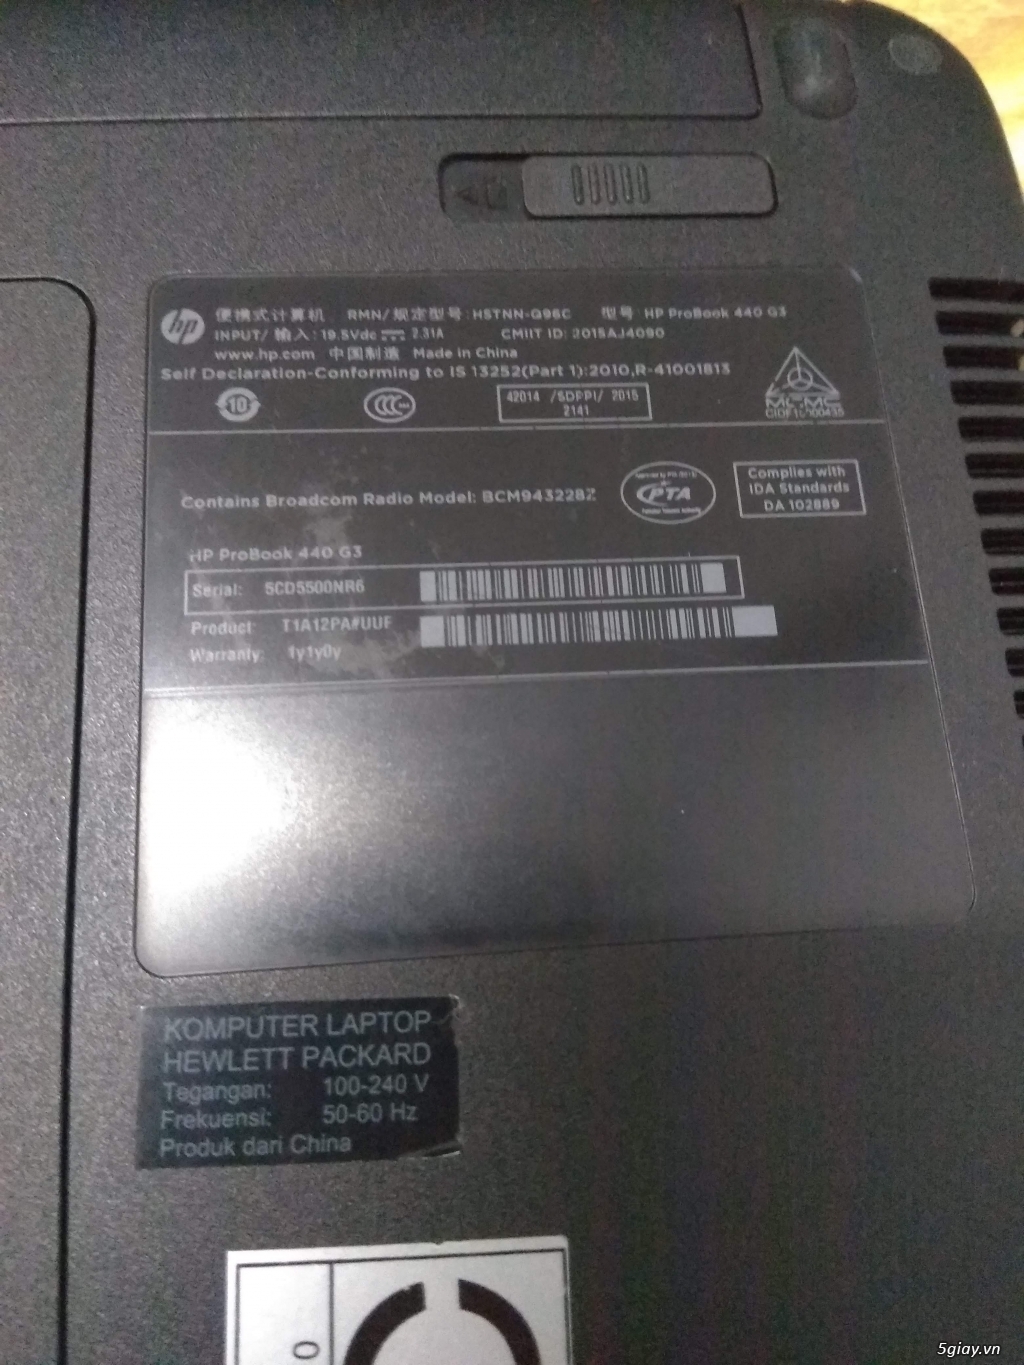 Cần bán: Laptop HP ProBook 440 G3 I5 4GB 128GB SSD - 2